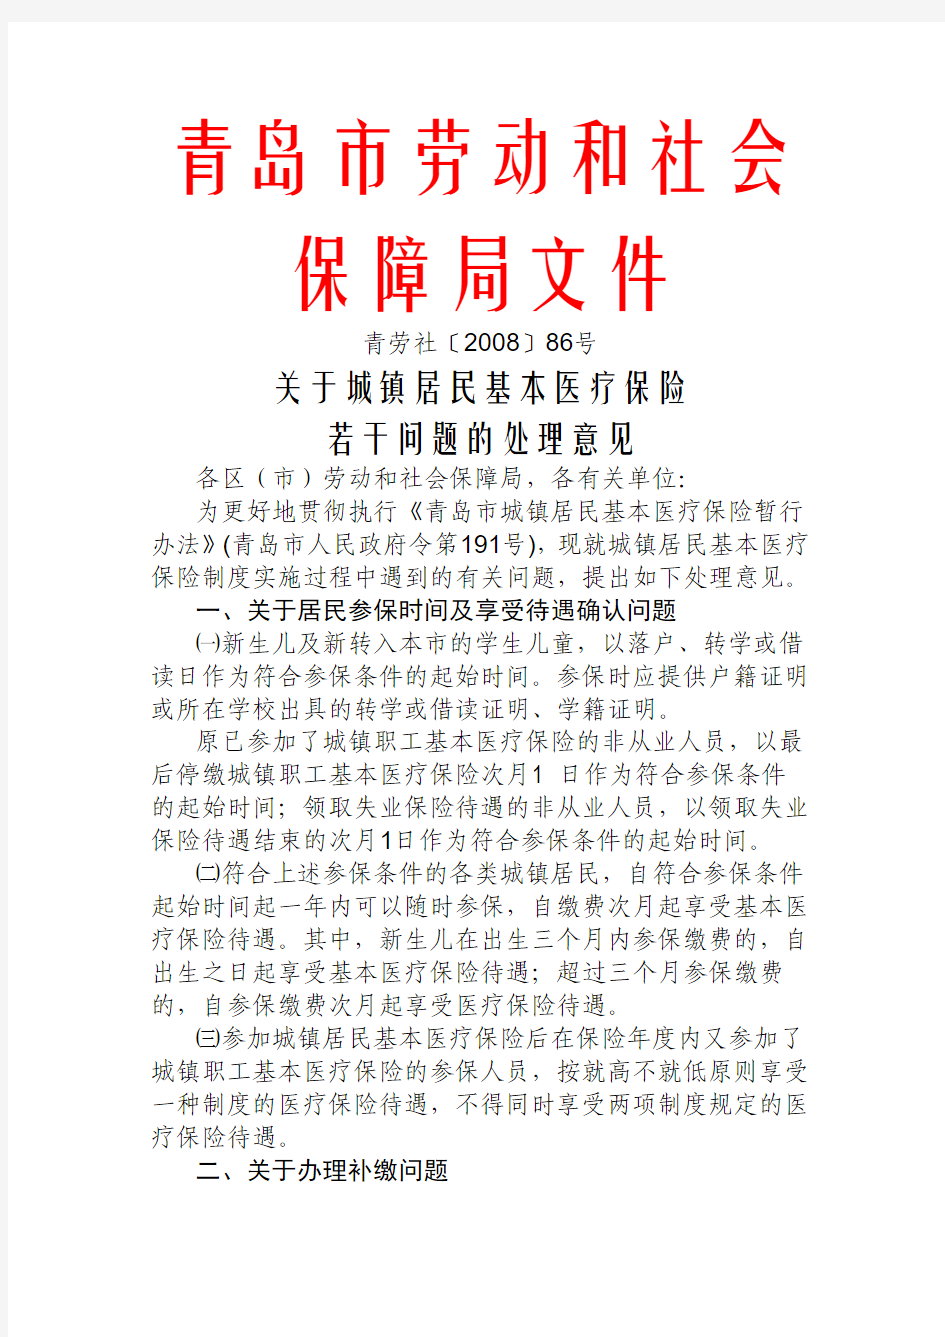 青劳社[2008]86号 规范居民医保问题的意见